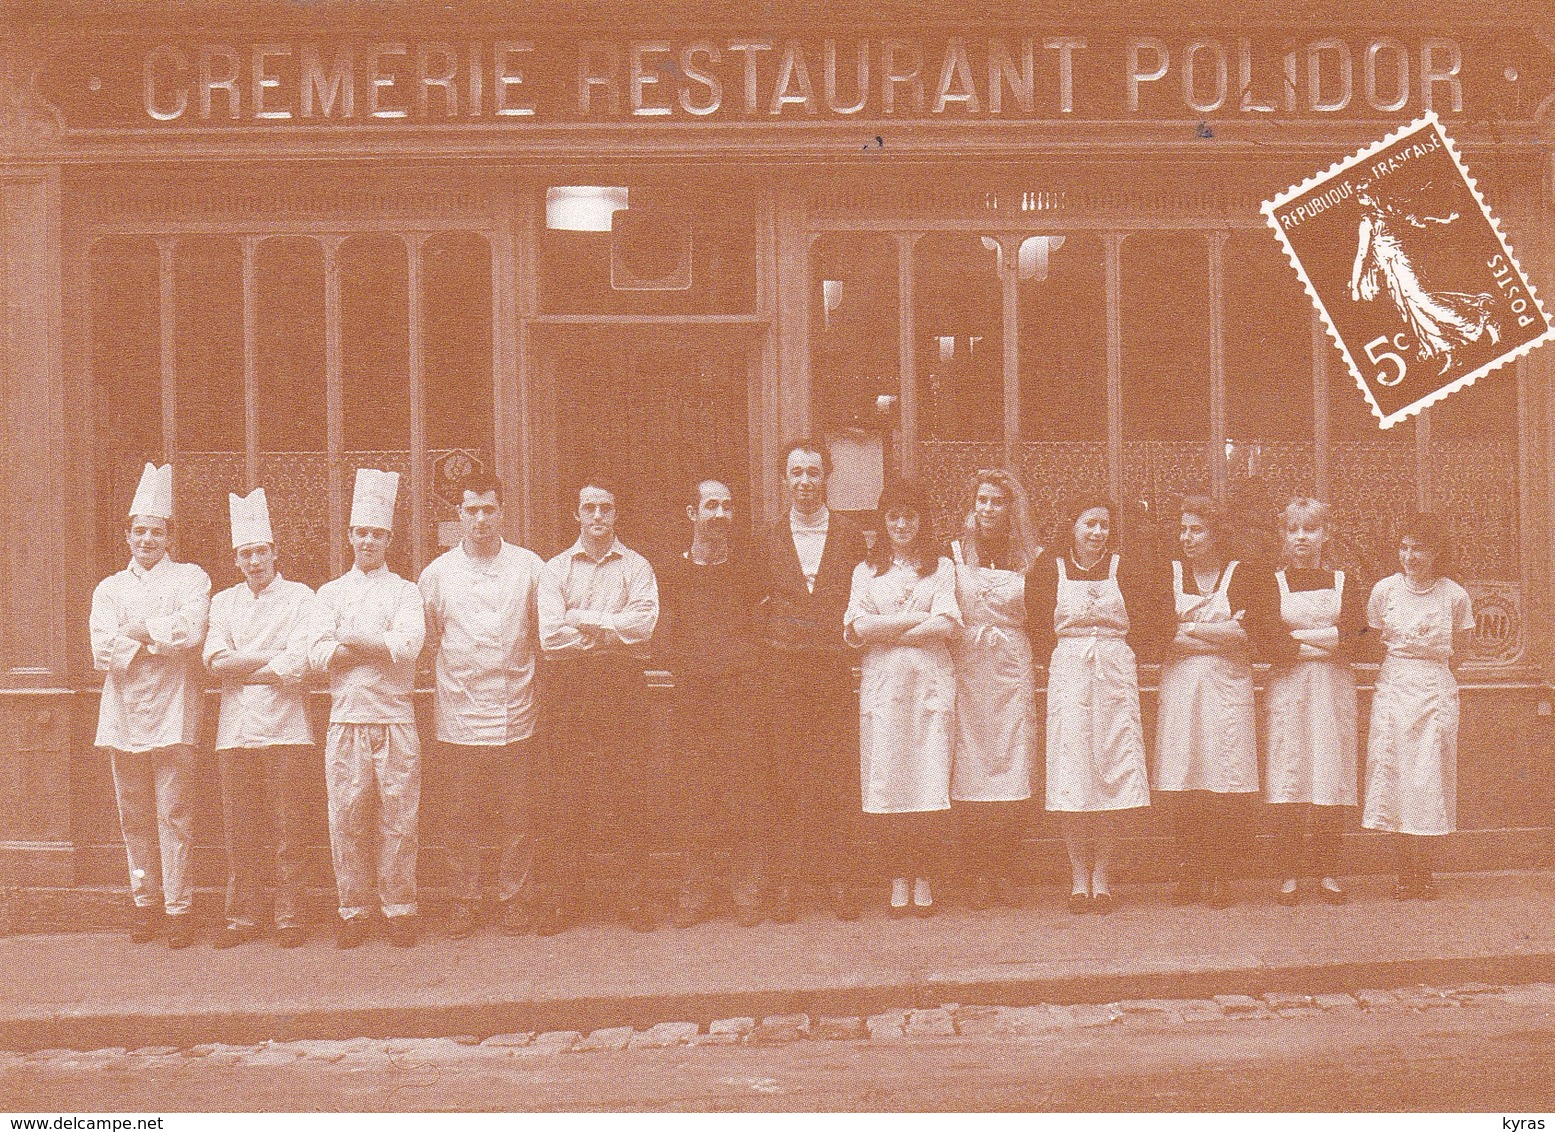 CPM 10x15 .REPRODUCTION  .Crèmerie-Restaurant POLIDOR (41, Rue Monsieur Le Prince PARIS 6°) - Restaurantes